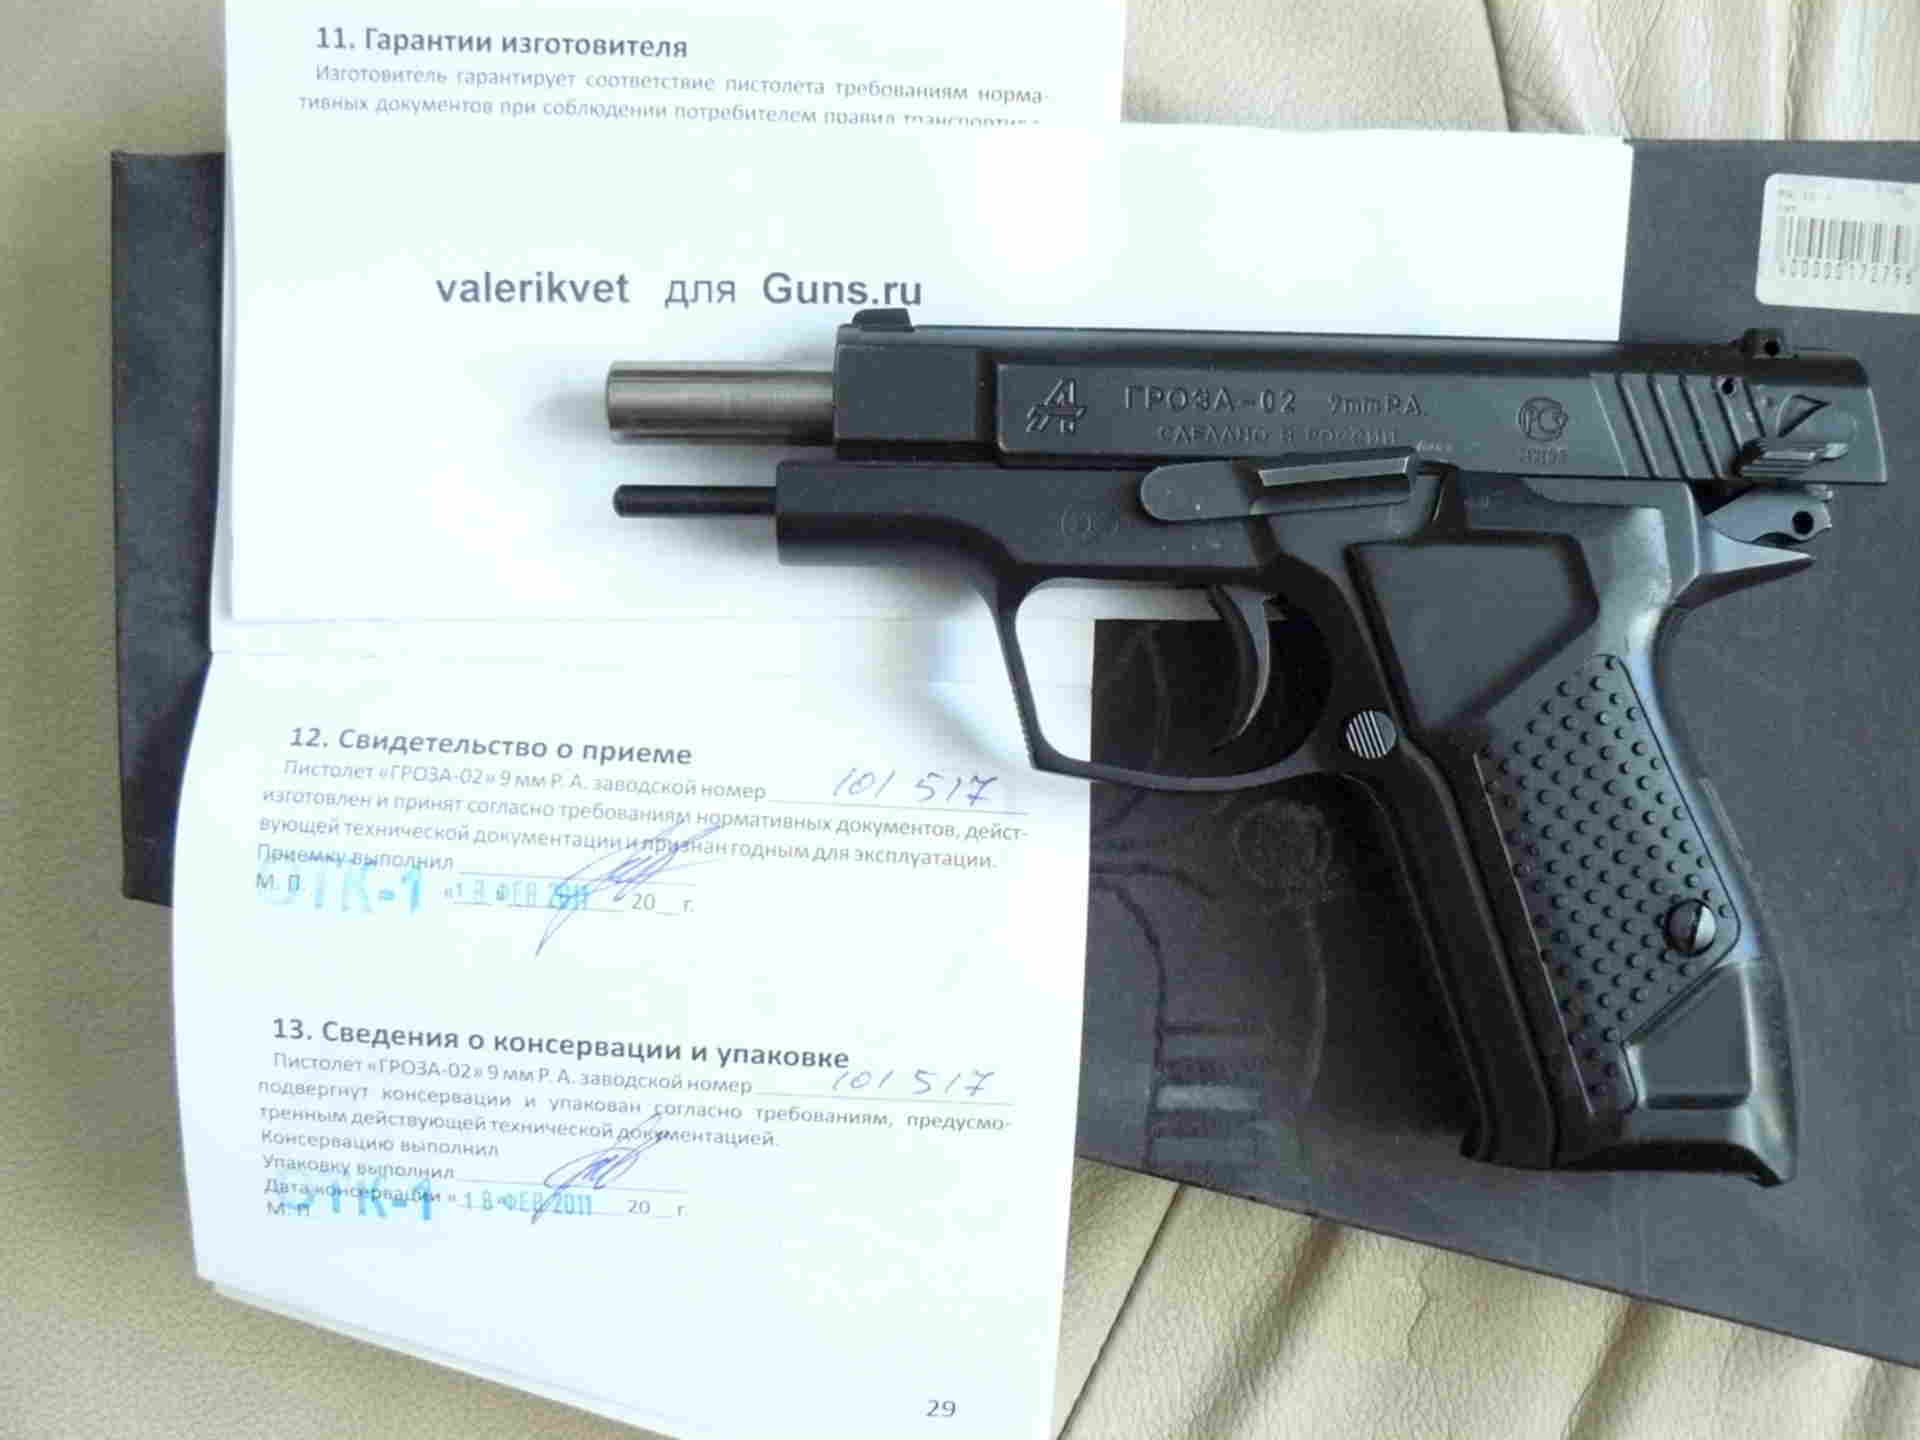 Травматический пистолет гроза-05 / 051 evo, технические характеристики ттх, описание с фото и видео, отзывы владельцев травмата